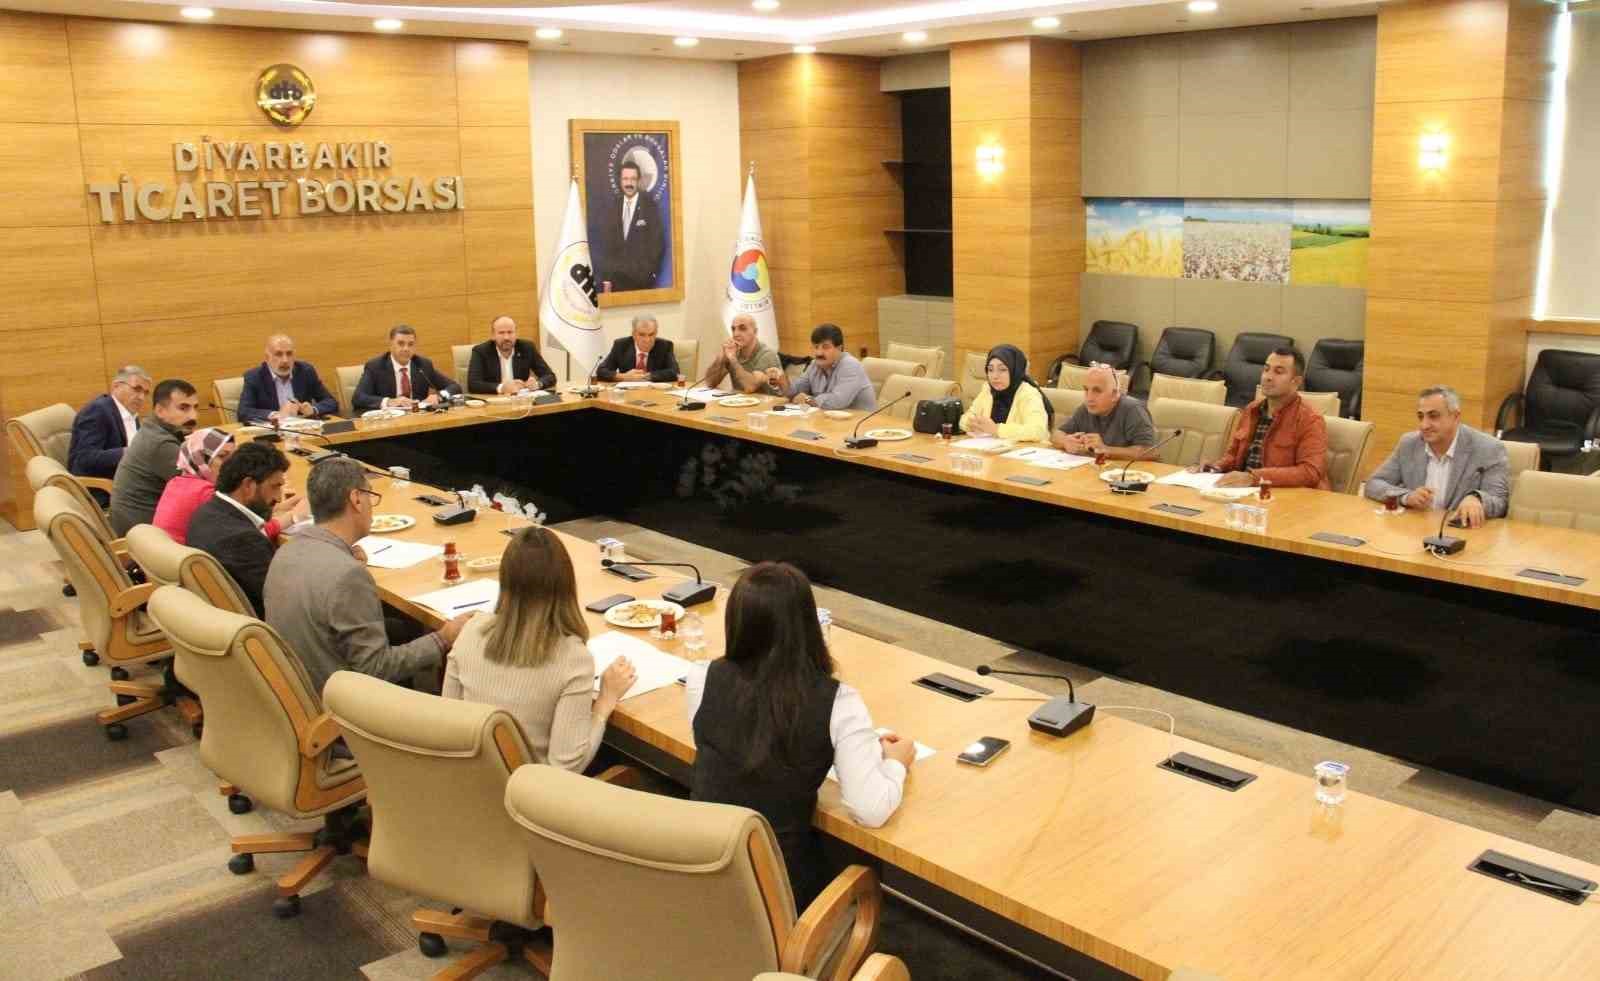 Diyarbakır Tarım Konseyi ilk toplantısını gerçekleştirdi